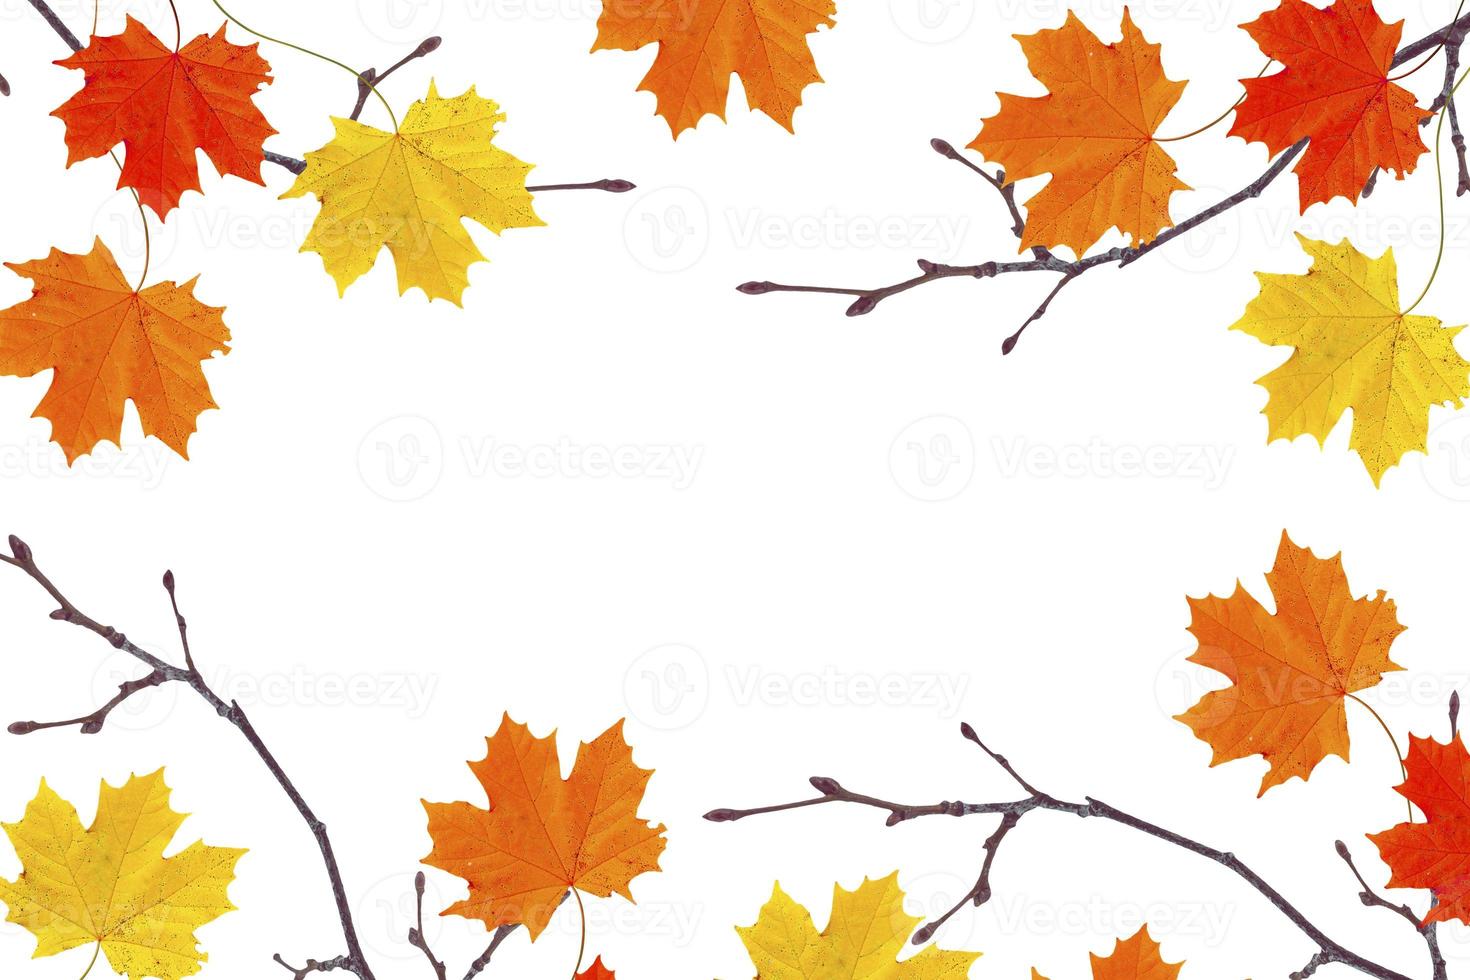 fond d'automne avec des feuilles colorées lumineuses. photo